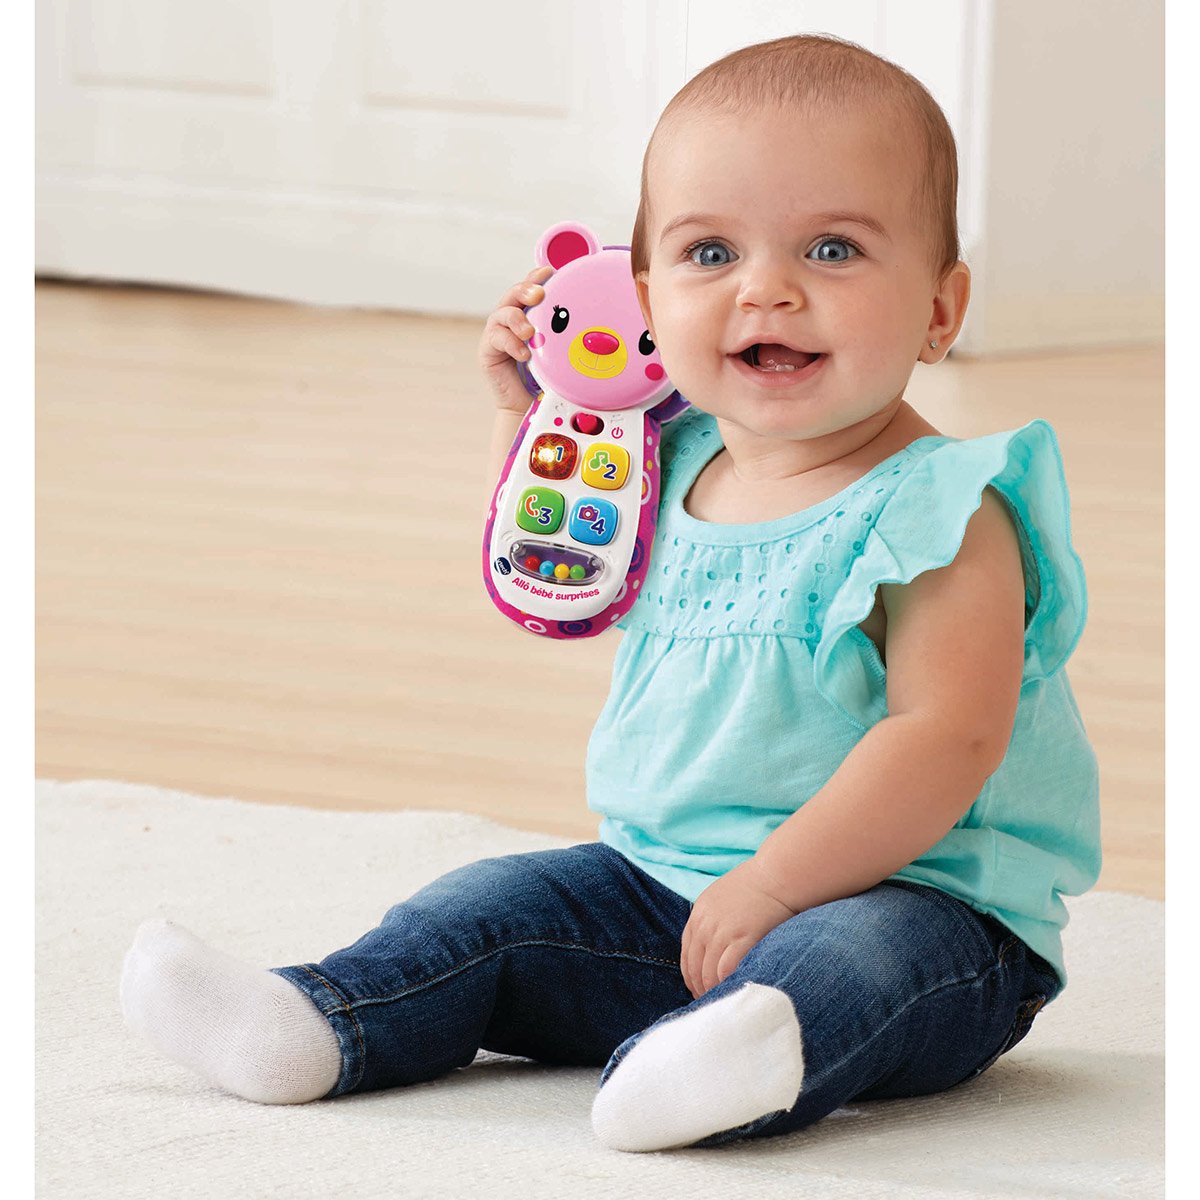 Allo bébé surprises brun-Téléphone portable pour bébé - VTech